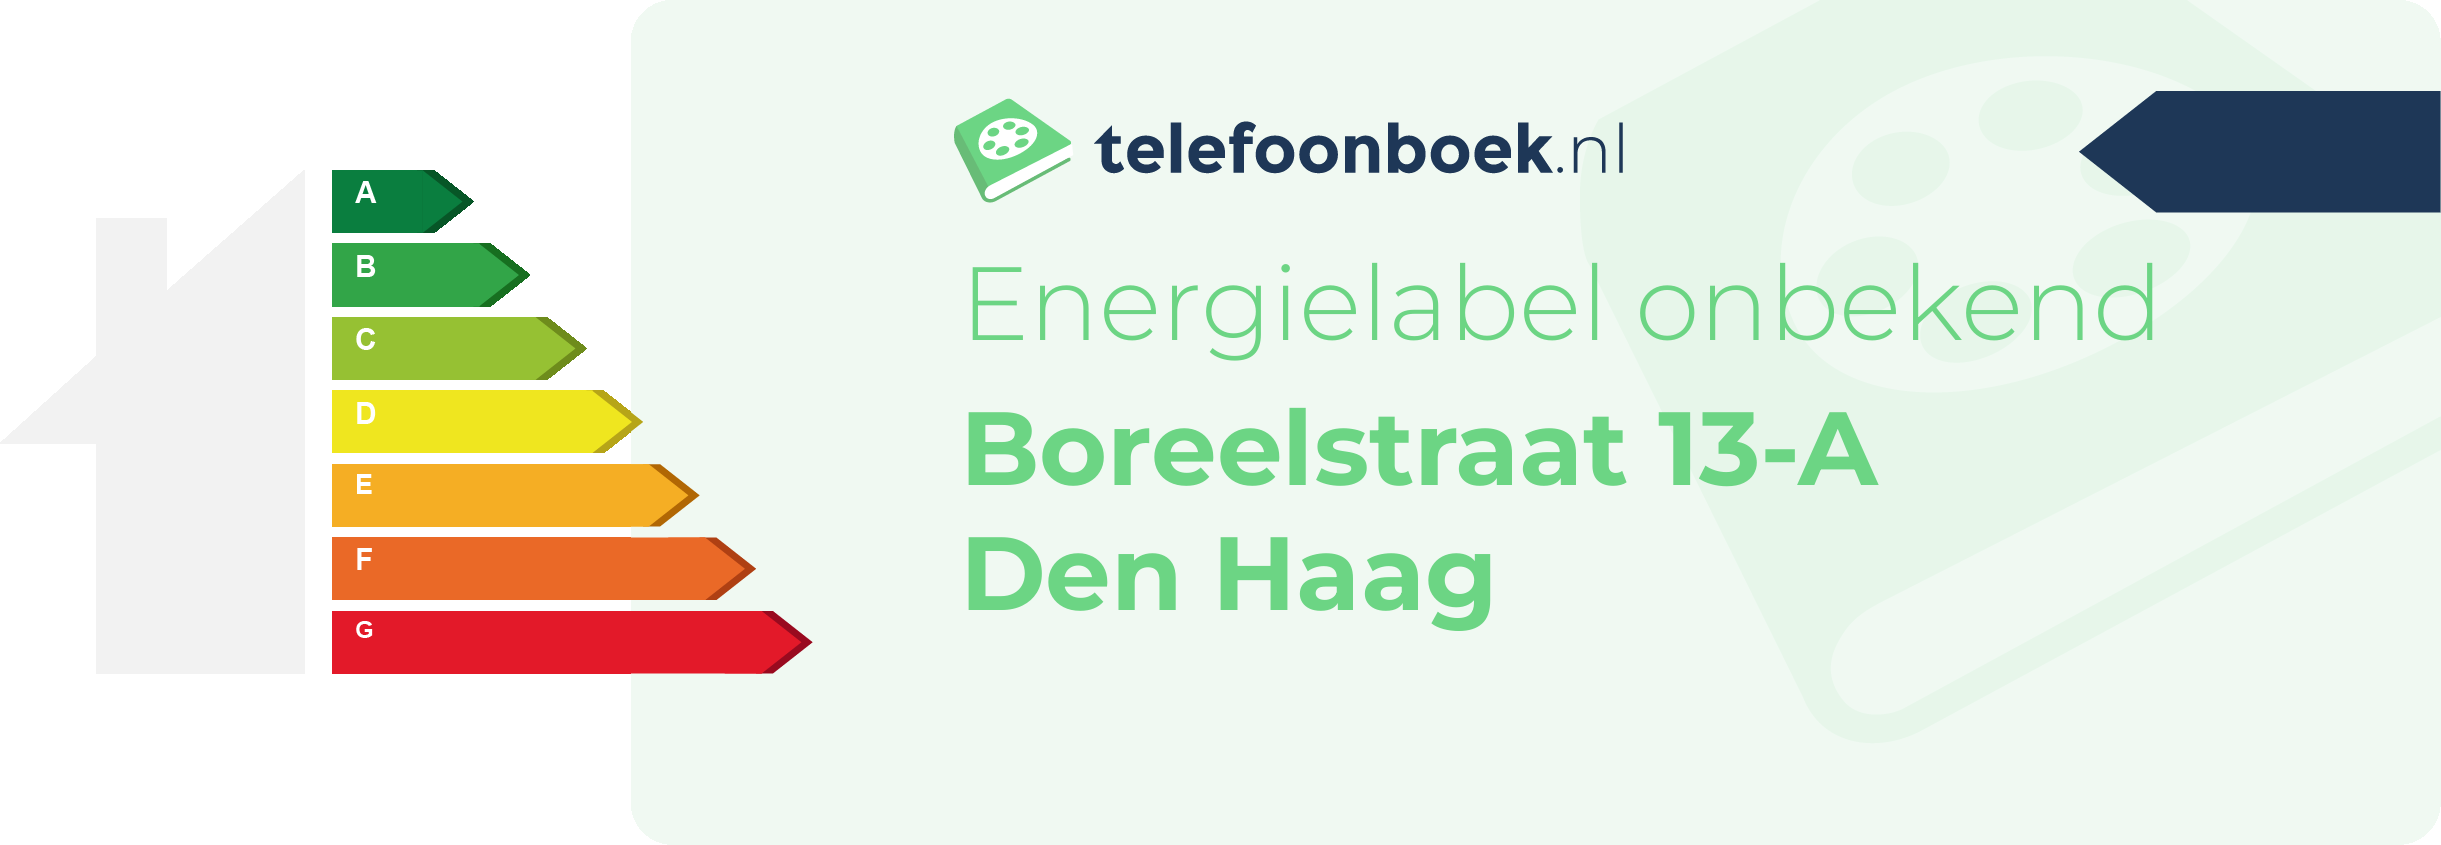 Energielabel Boreelstraat 13-A Den Haag